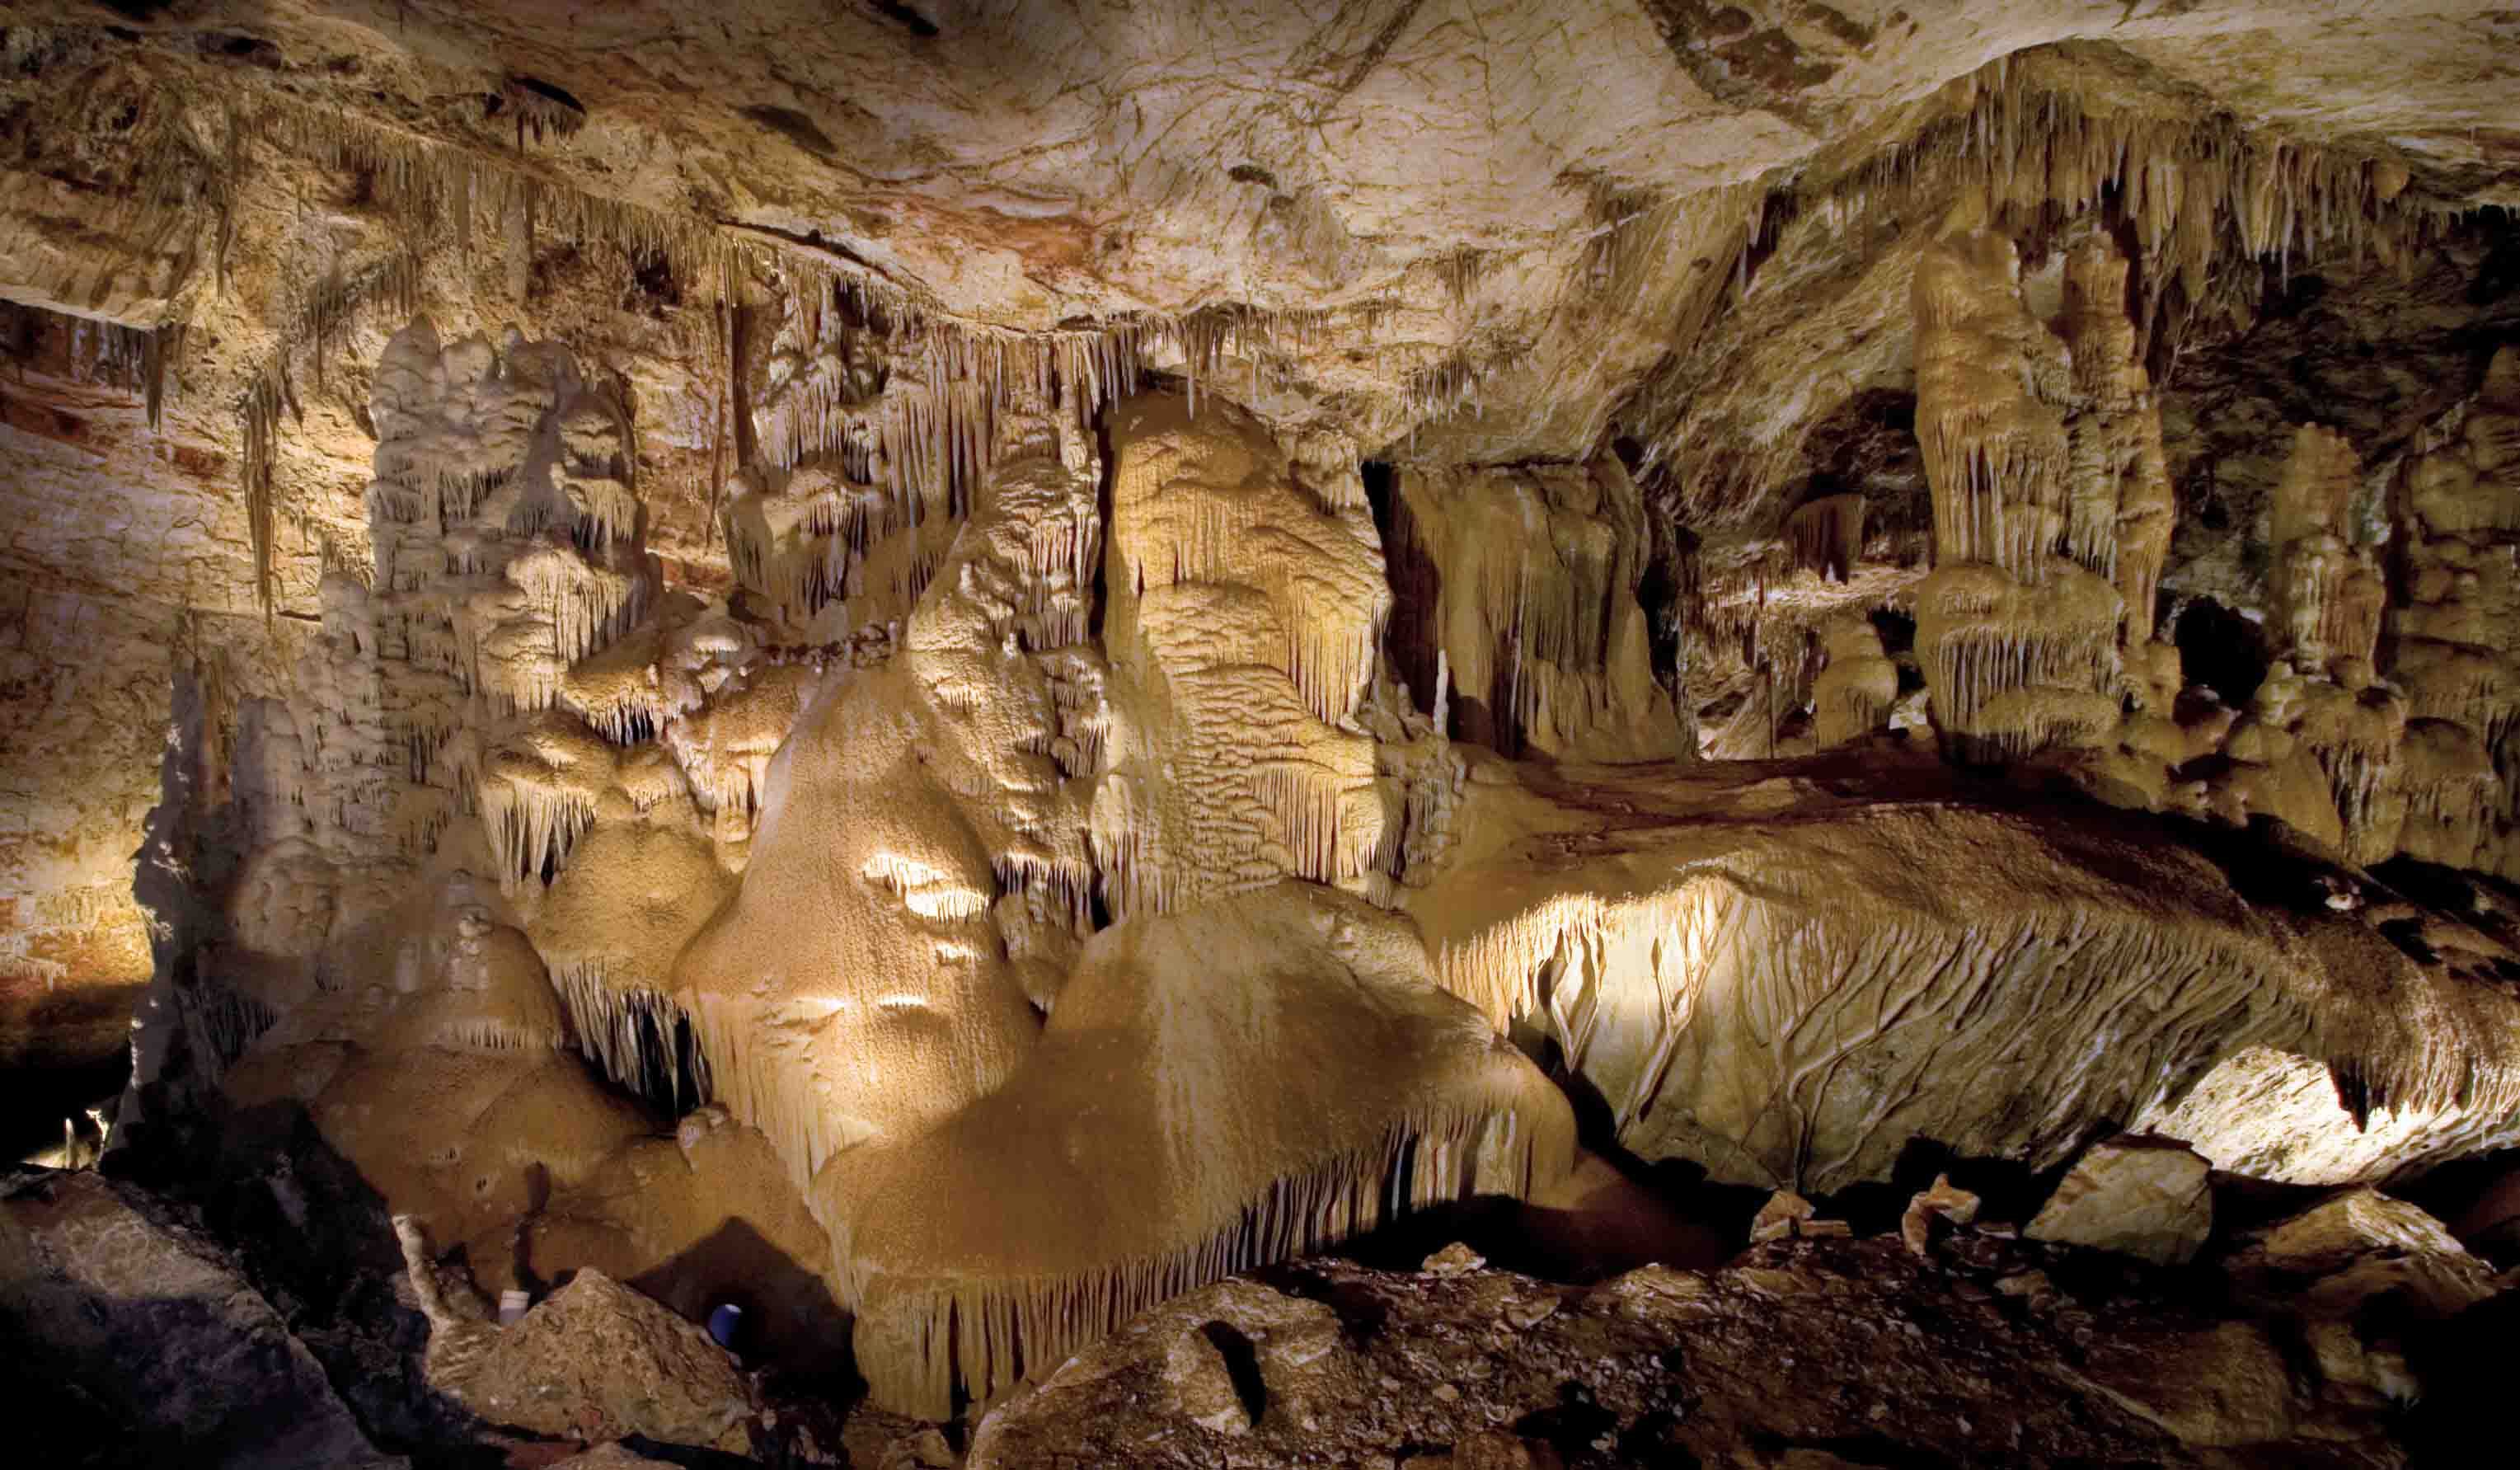 The Big Room in Kartchner Caverns